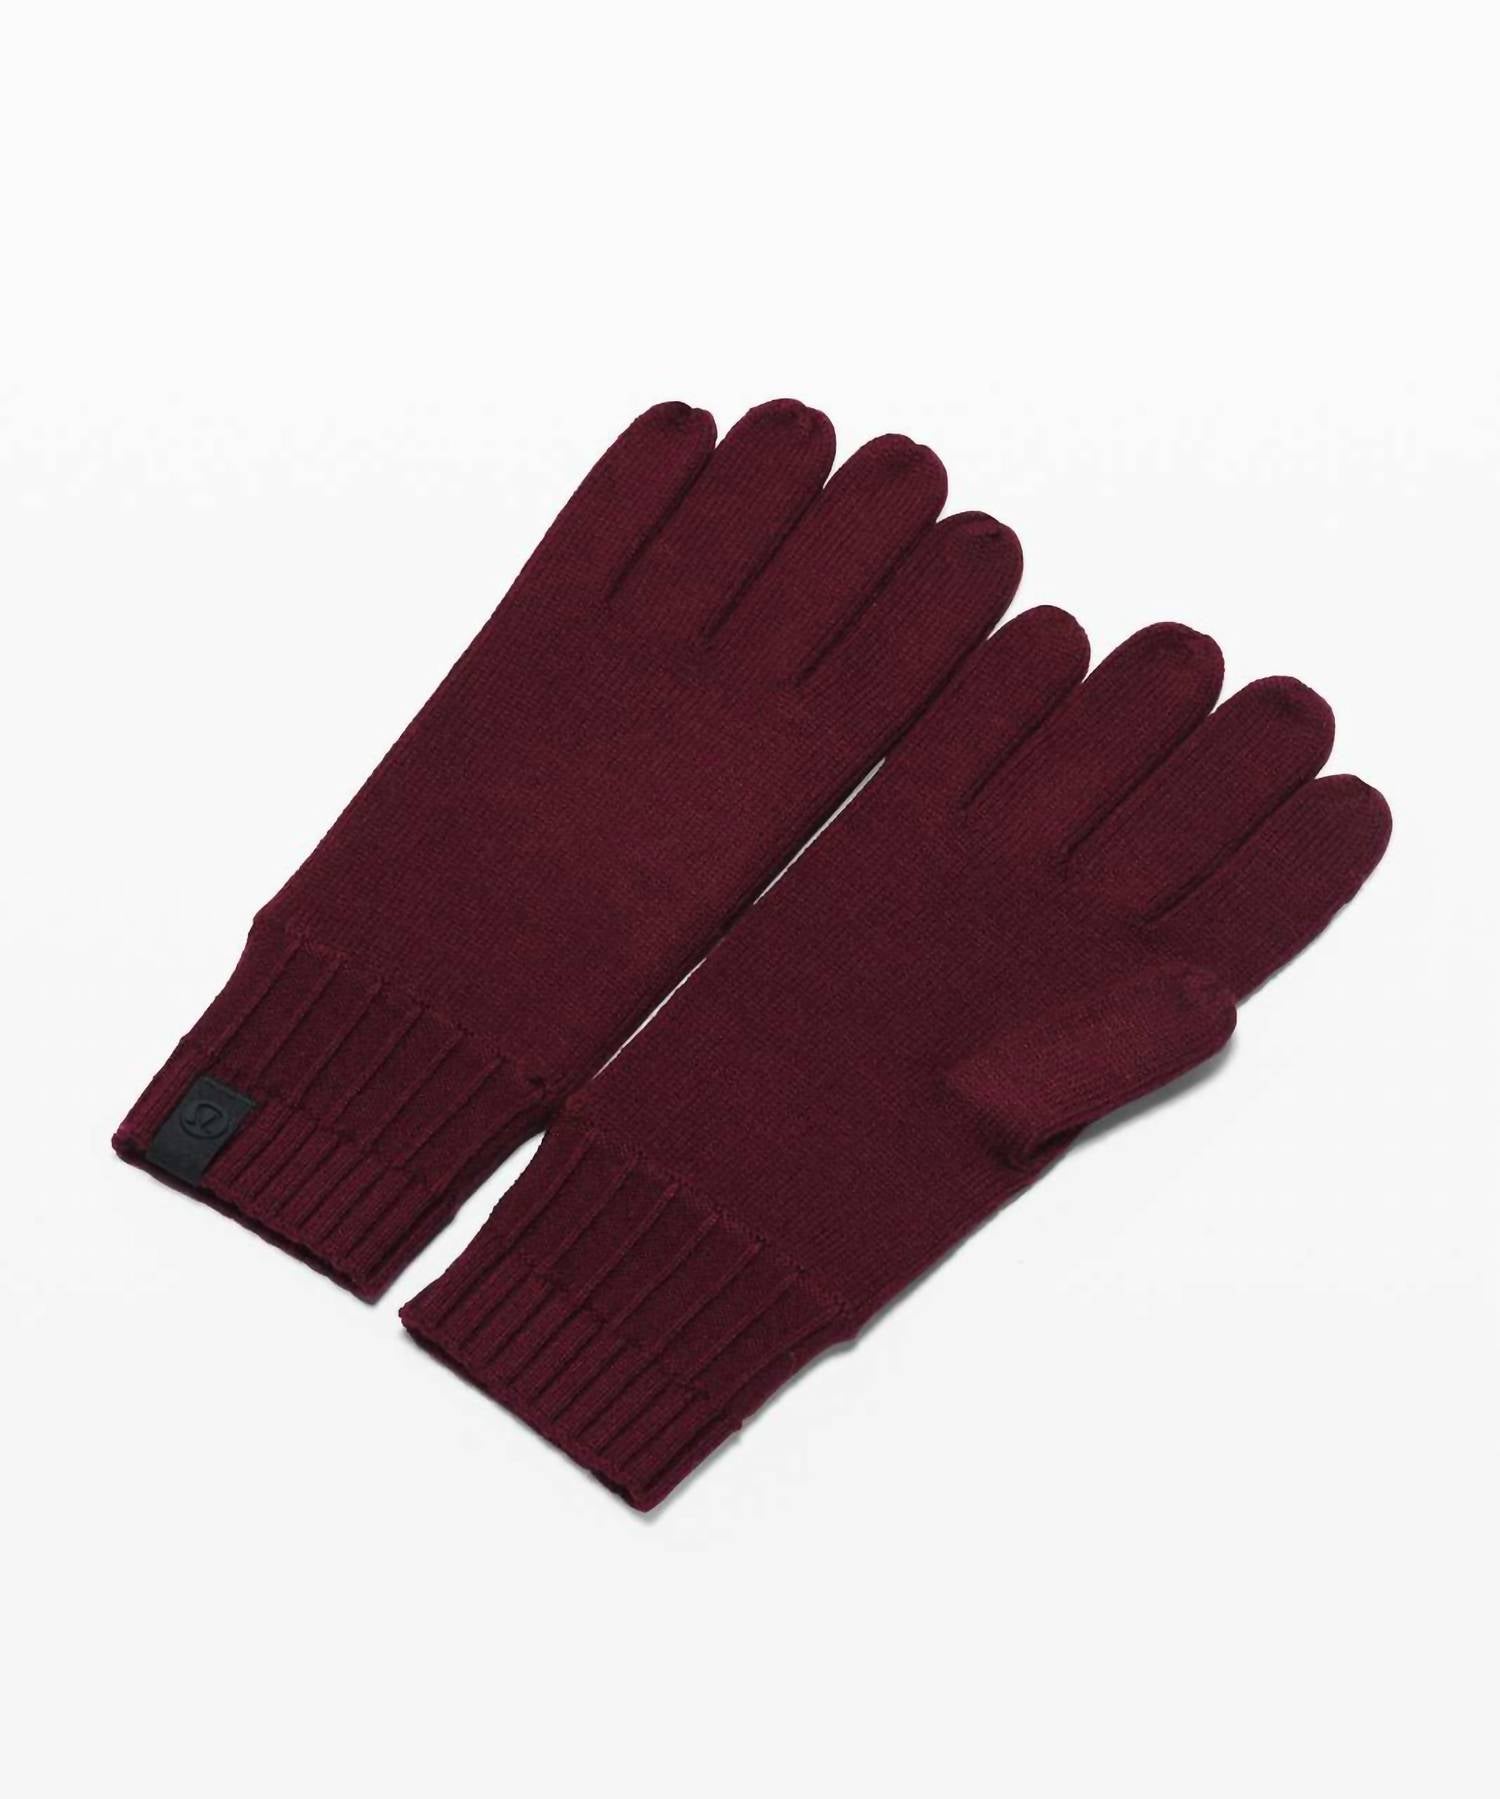 Lululemon Women's Tech & Toasty Knit Gloves In Garnet In Burgundy